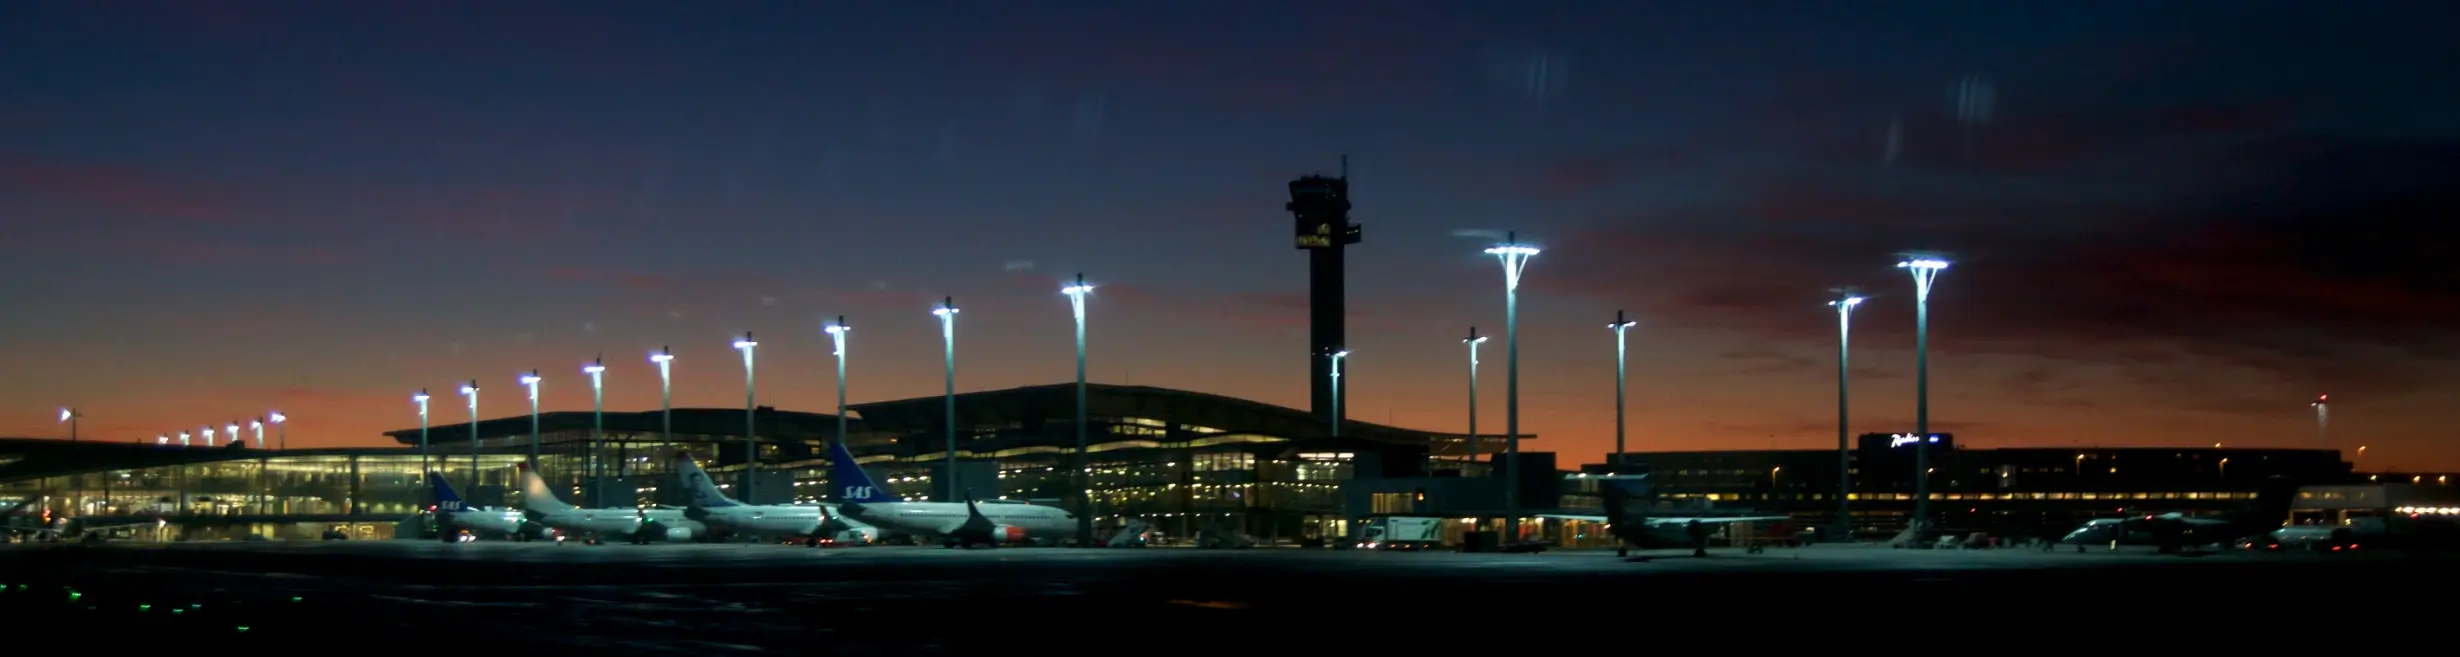 Oslo Lufthavn Gardermoen kveldsbilde